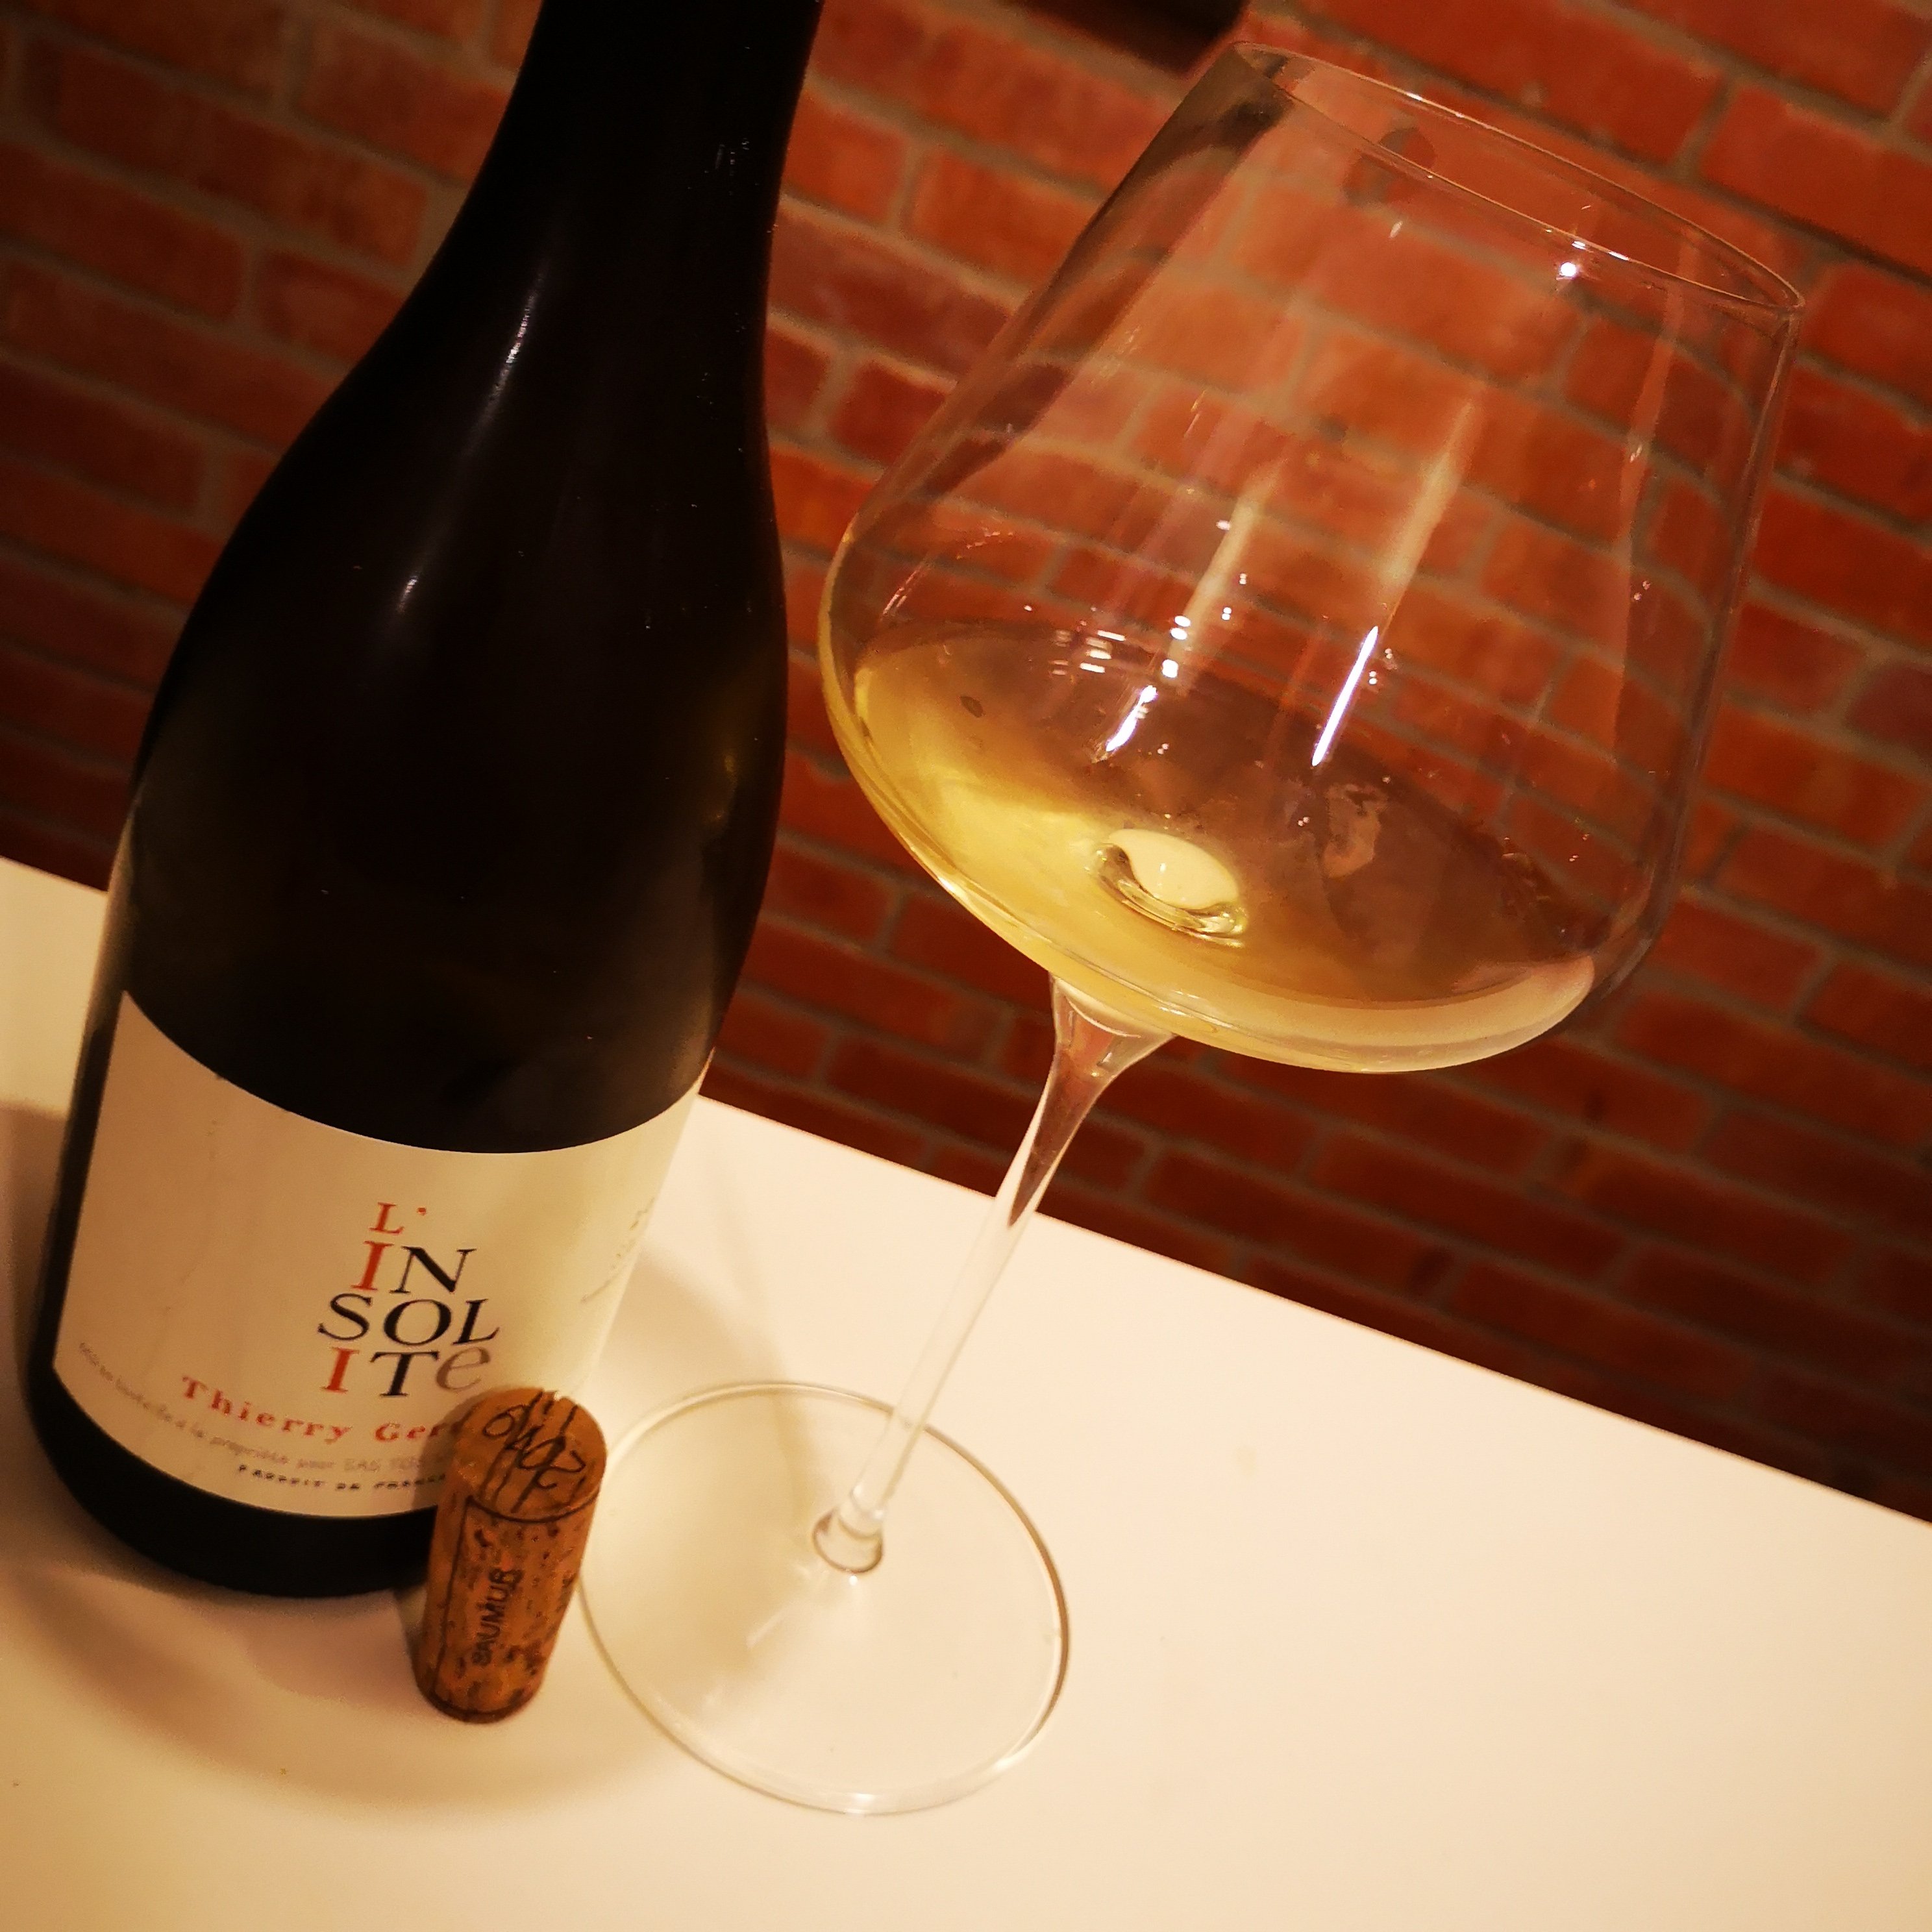 Enonauta/Degustazione di Vino #183 - L'Insolite 2019 Saumur - Domaine des Roches Neuves | Thierry Germain e il suo ottimo Chenin